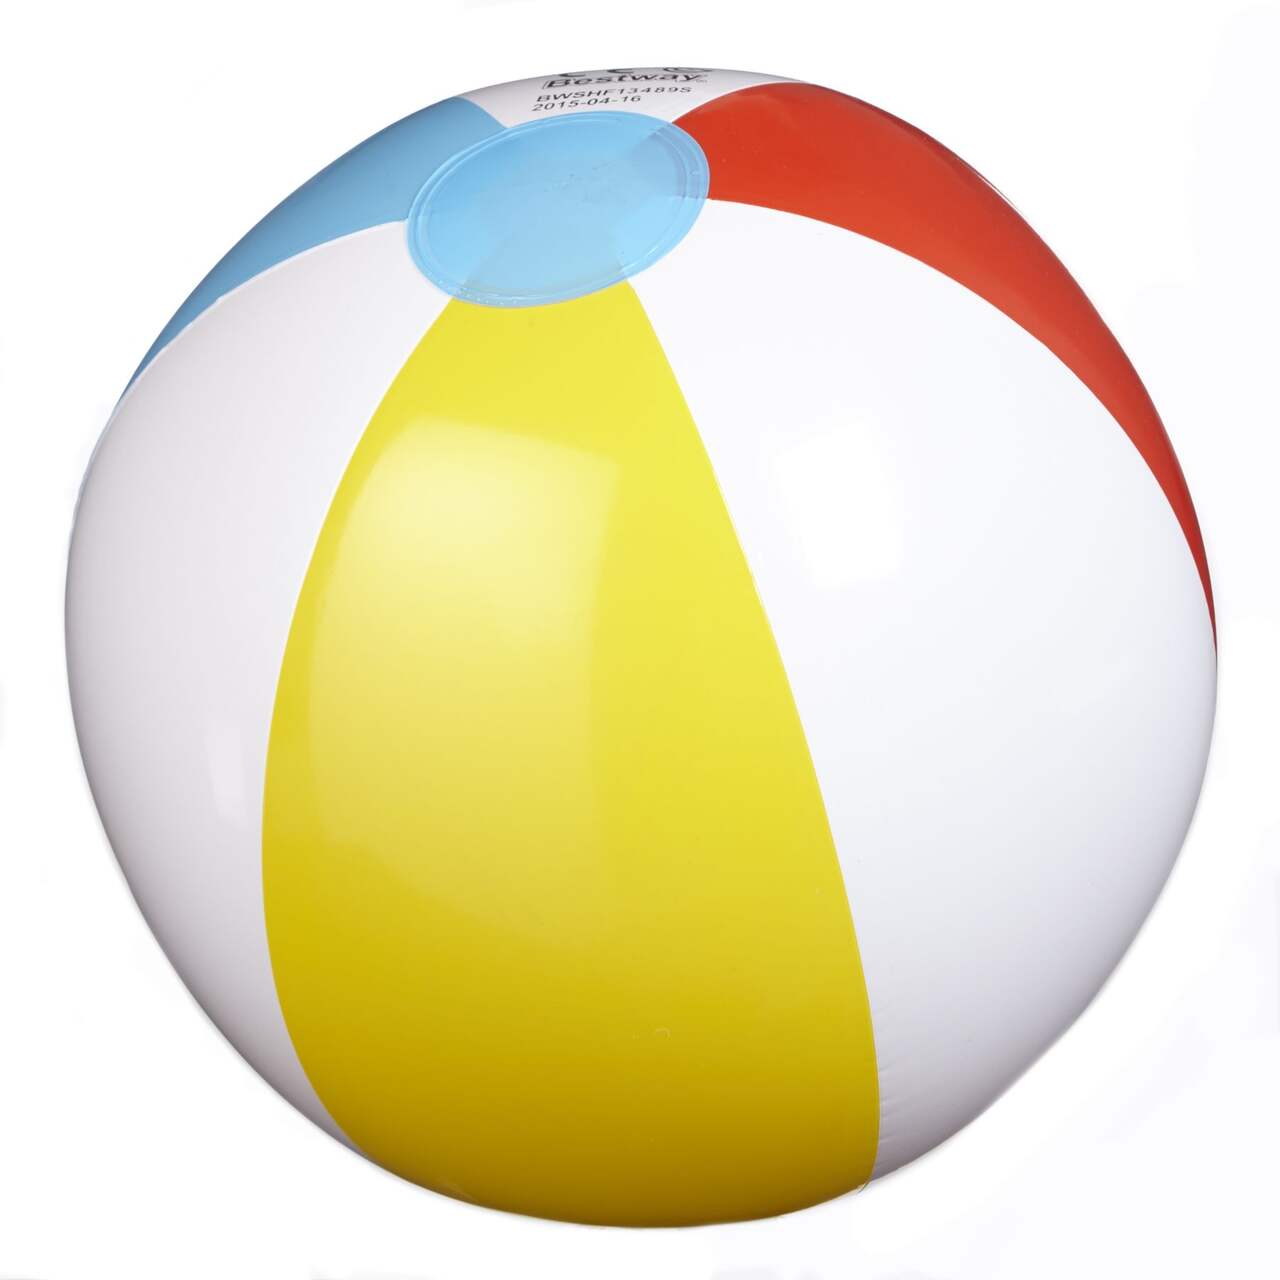 Ballon de plage - Multicolore - Kiabi - 7.89€